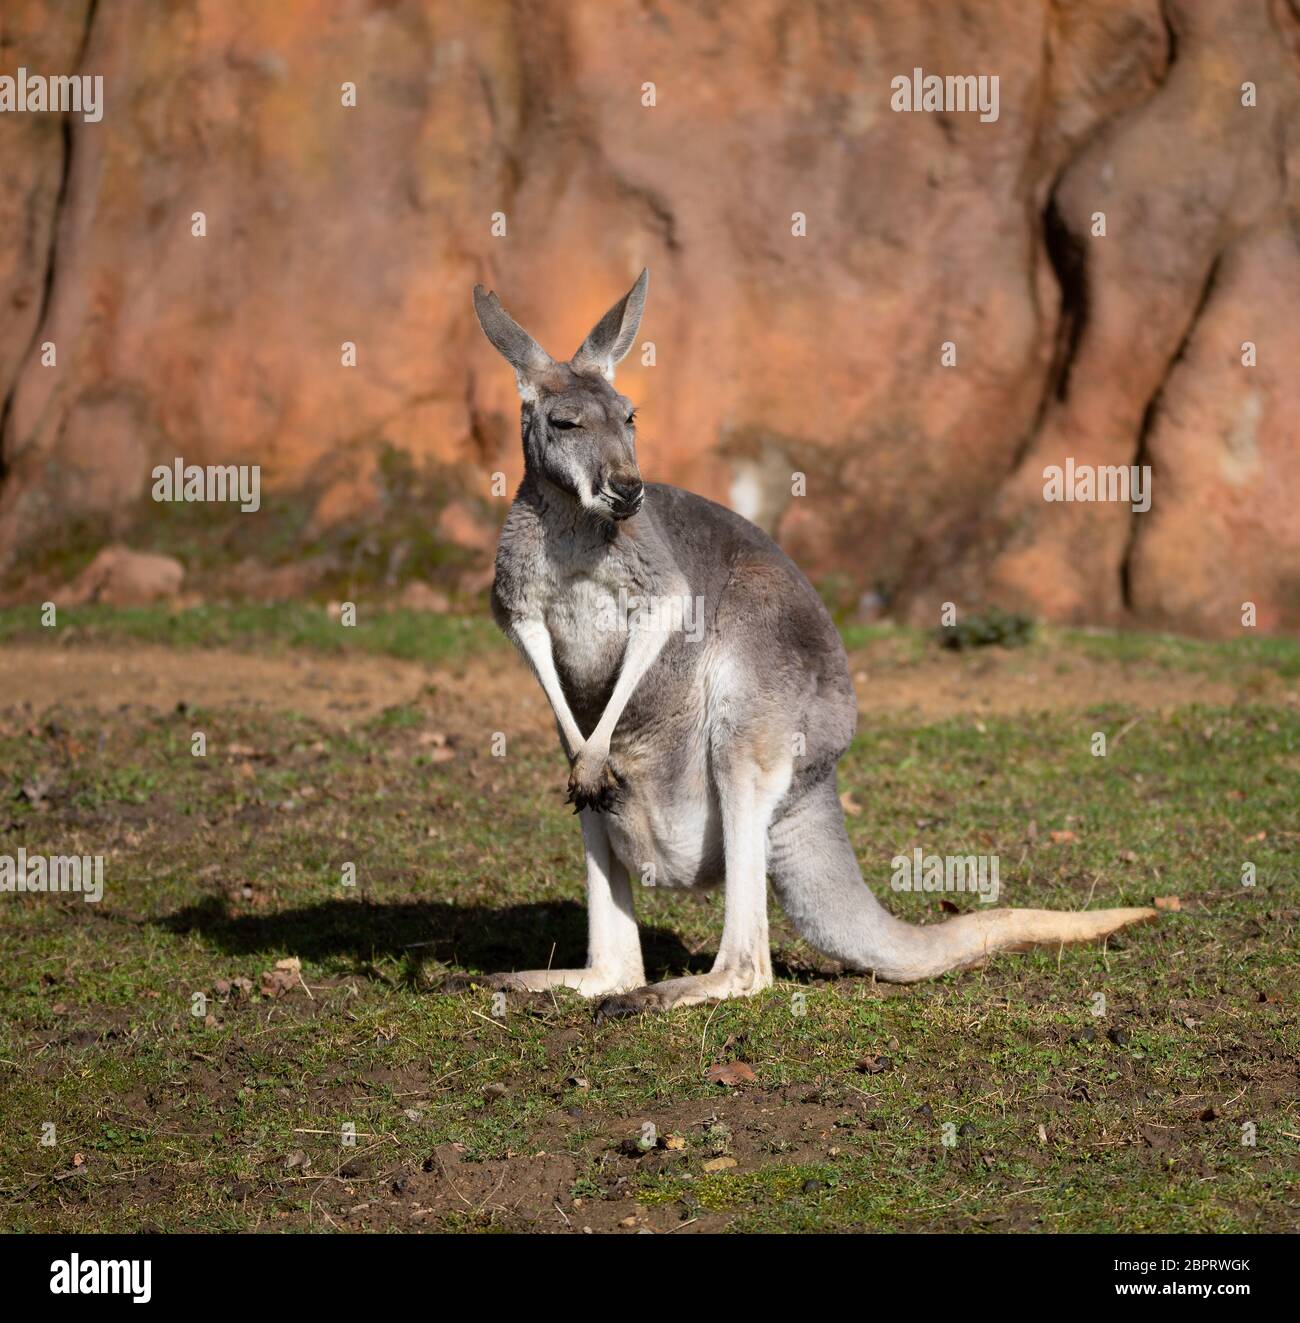 Kangourou rouge (Macropus rufus) est le plus grand de tous les kangourous, le plus grand mammifère terrestre originaire de l'Australie Banque D'Images